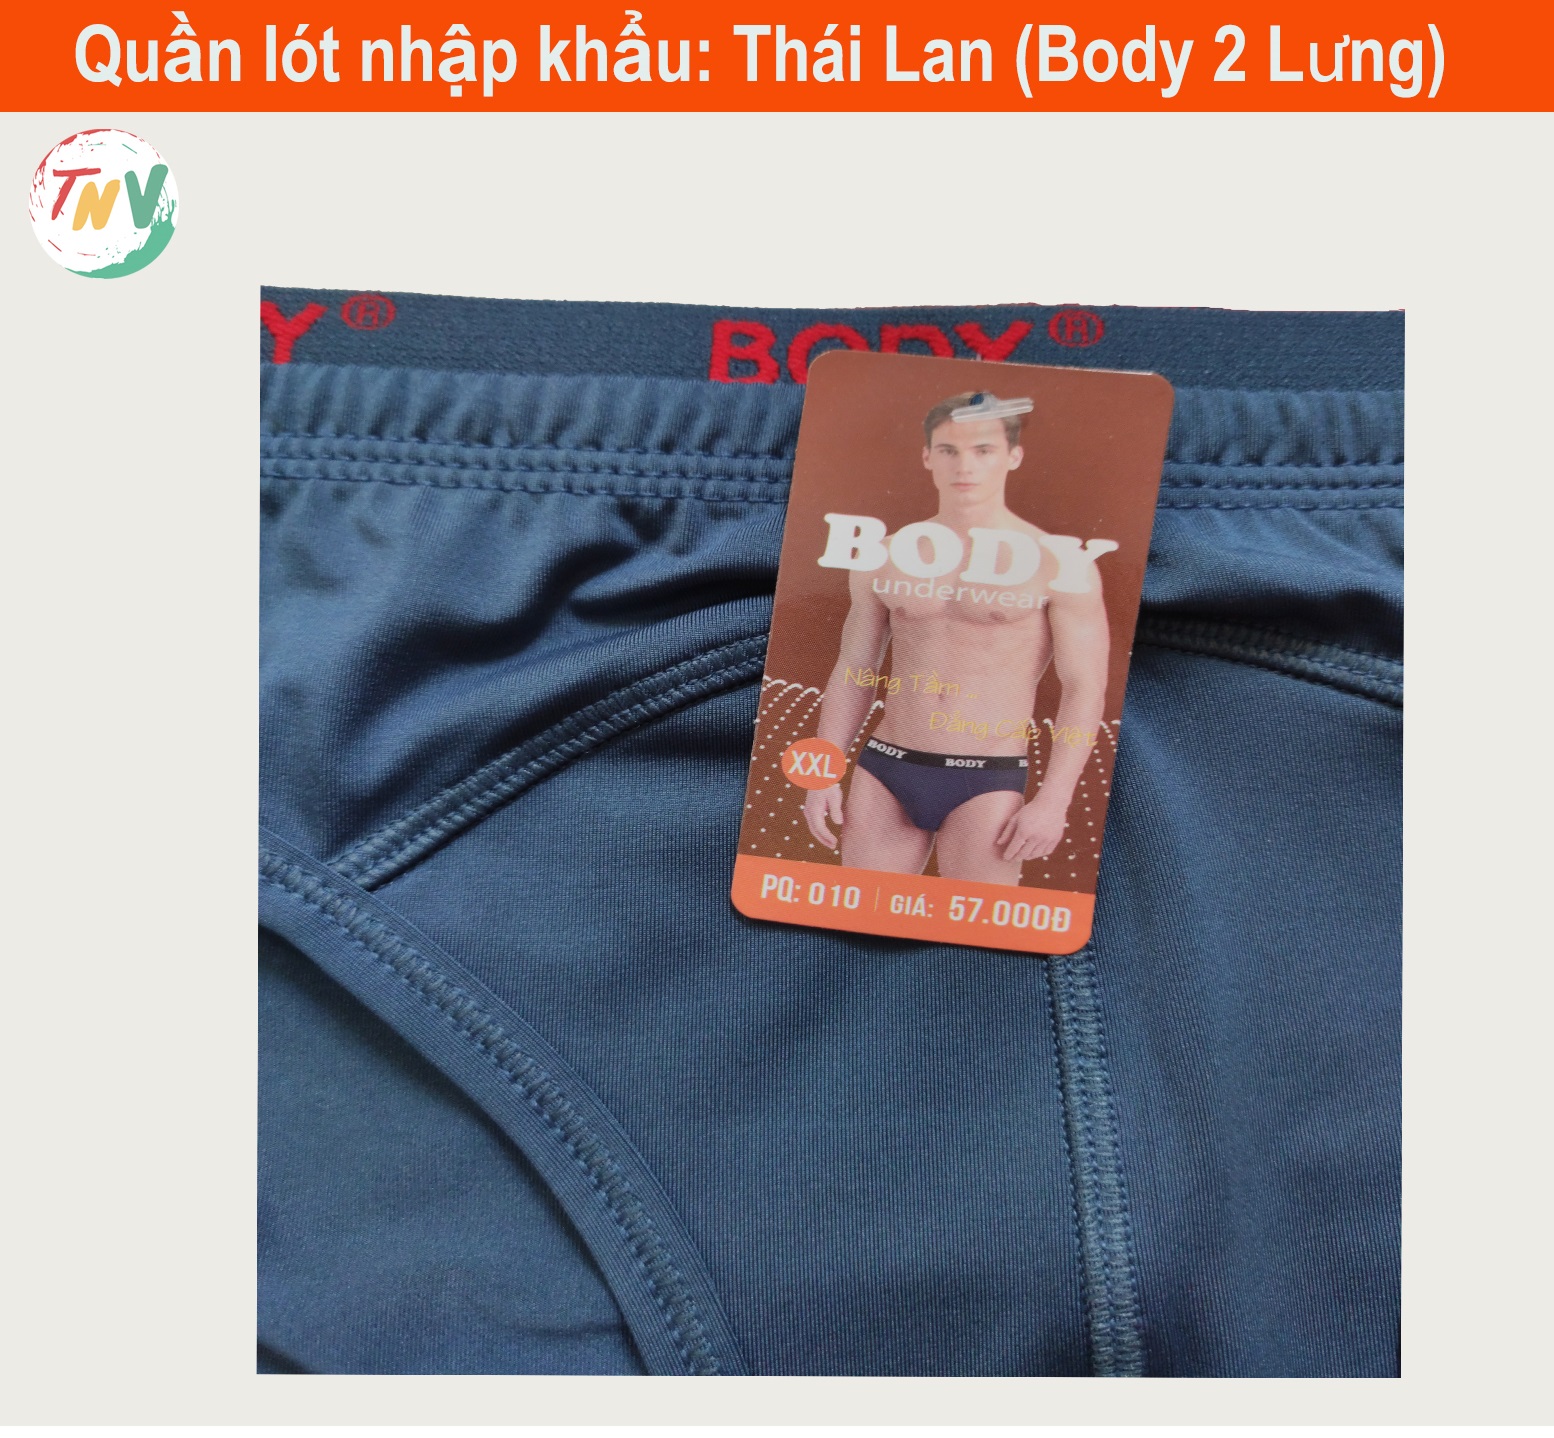 Combo 5 quần lót Nam Thái Lan (Body 2 Lưng)